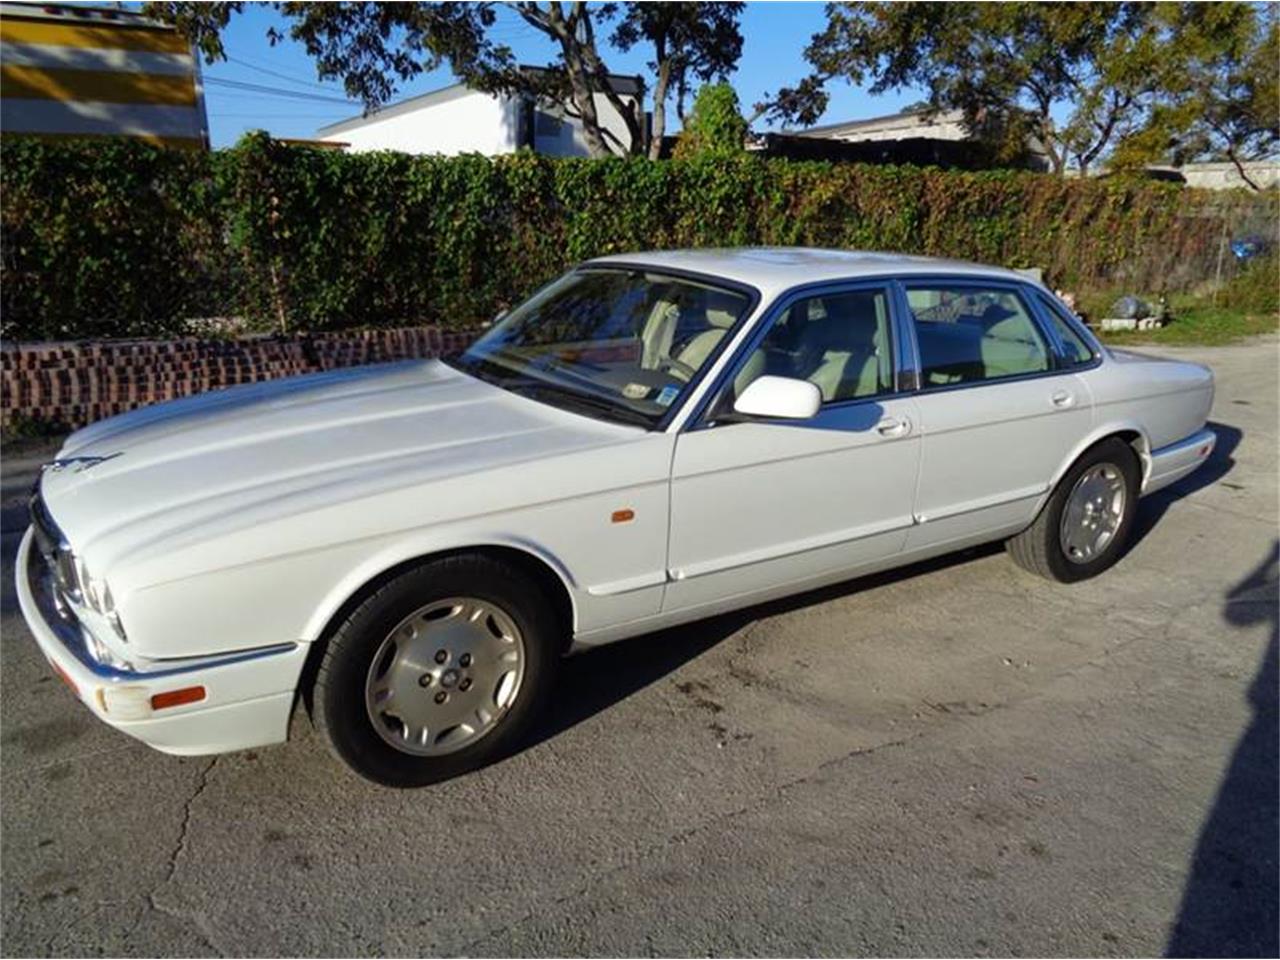 1997 Jaguar XJ6 for Sale | ClassicCars.com | CC-1088601